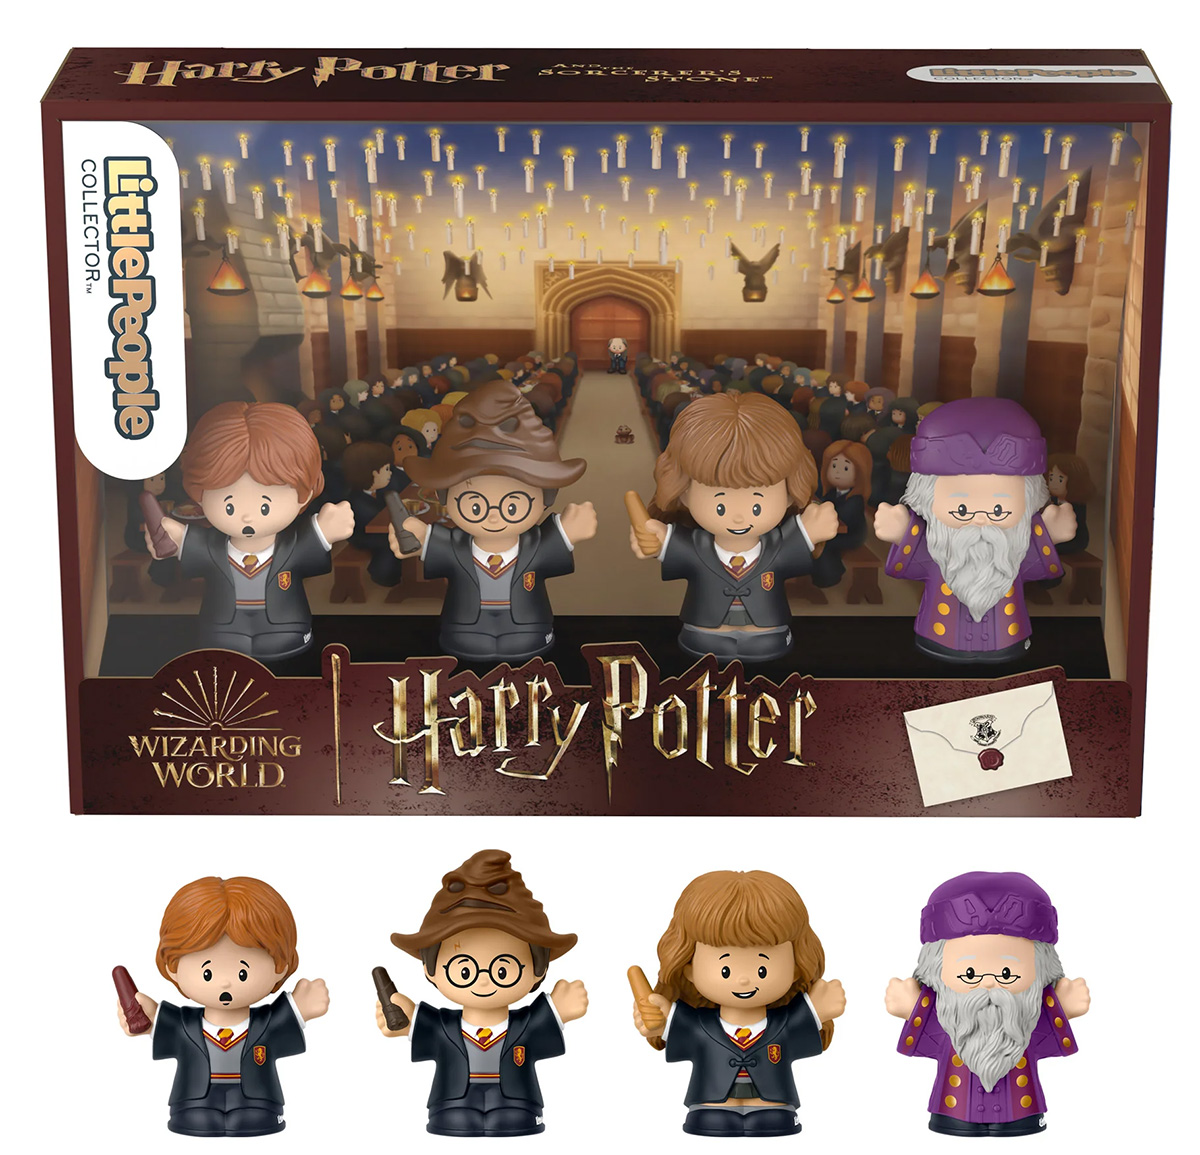 Bonecos Little People Collector Harry Potter: Pedra Filosofal e a Câmera Secreta